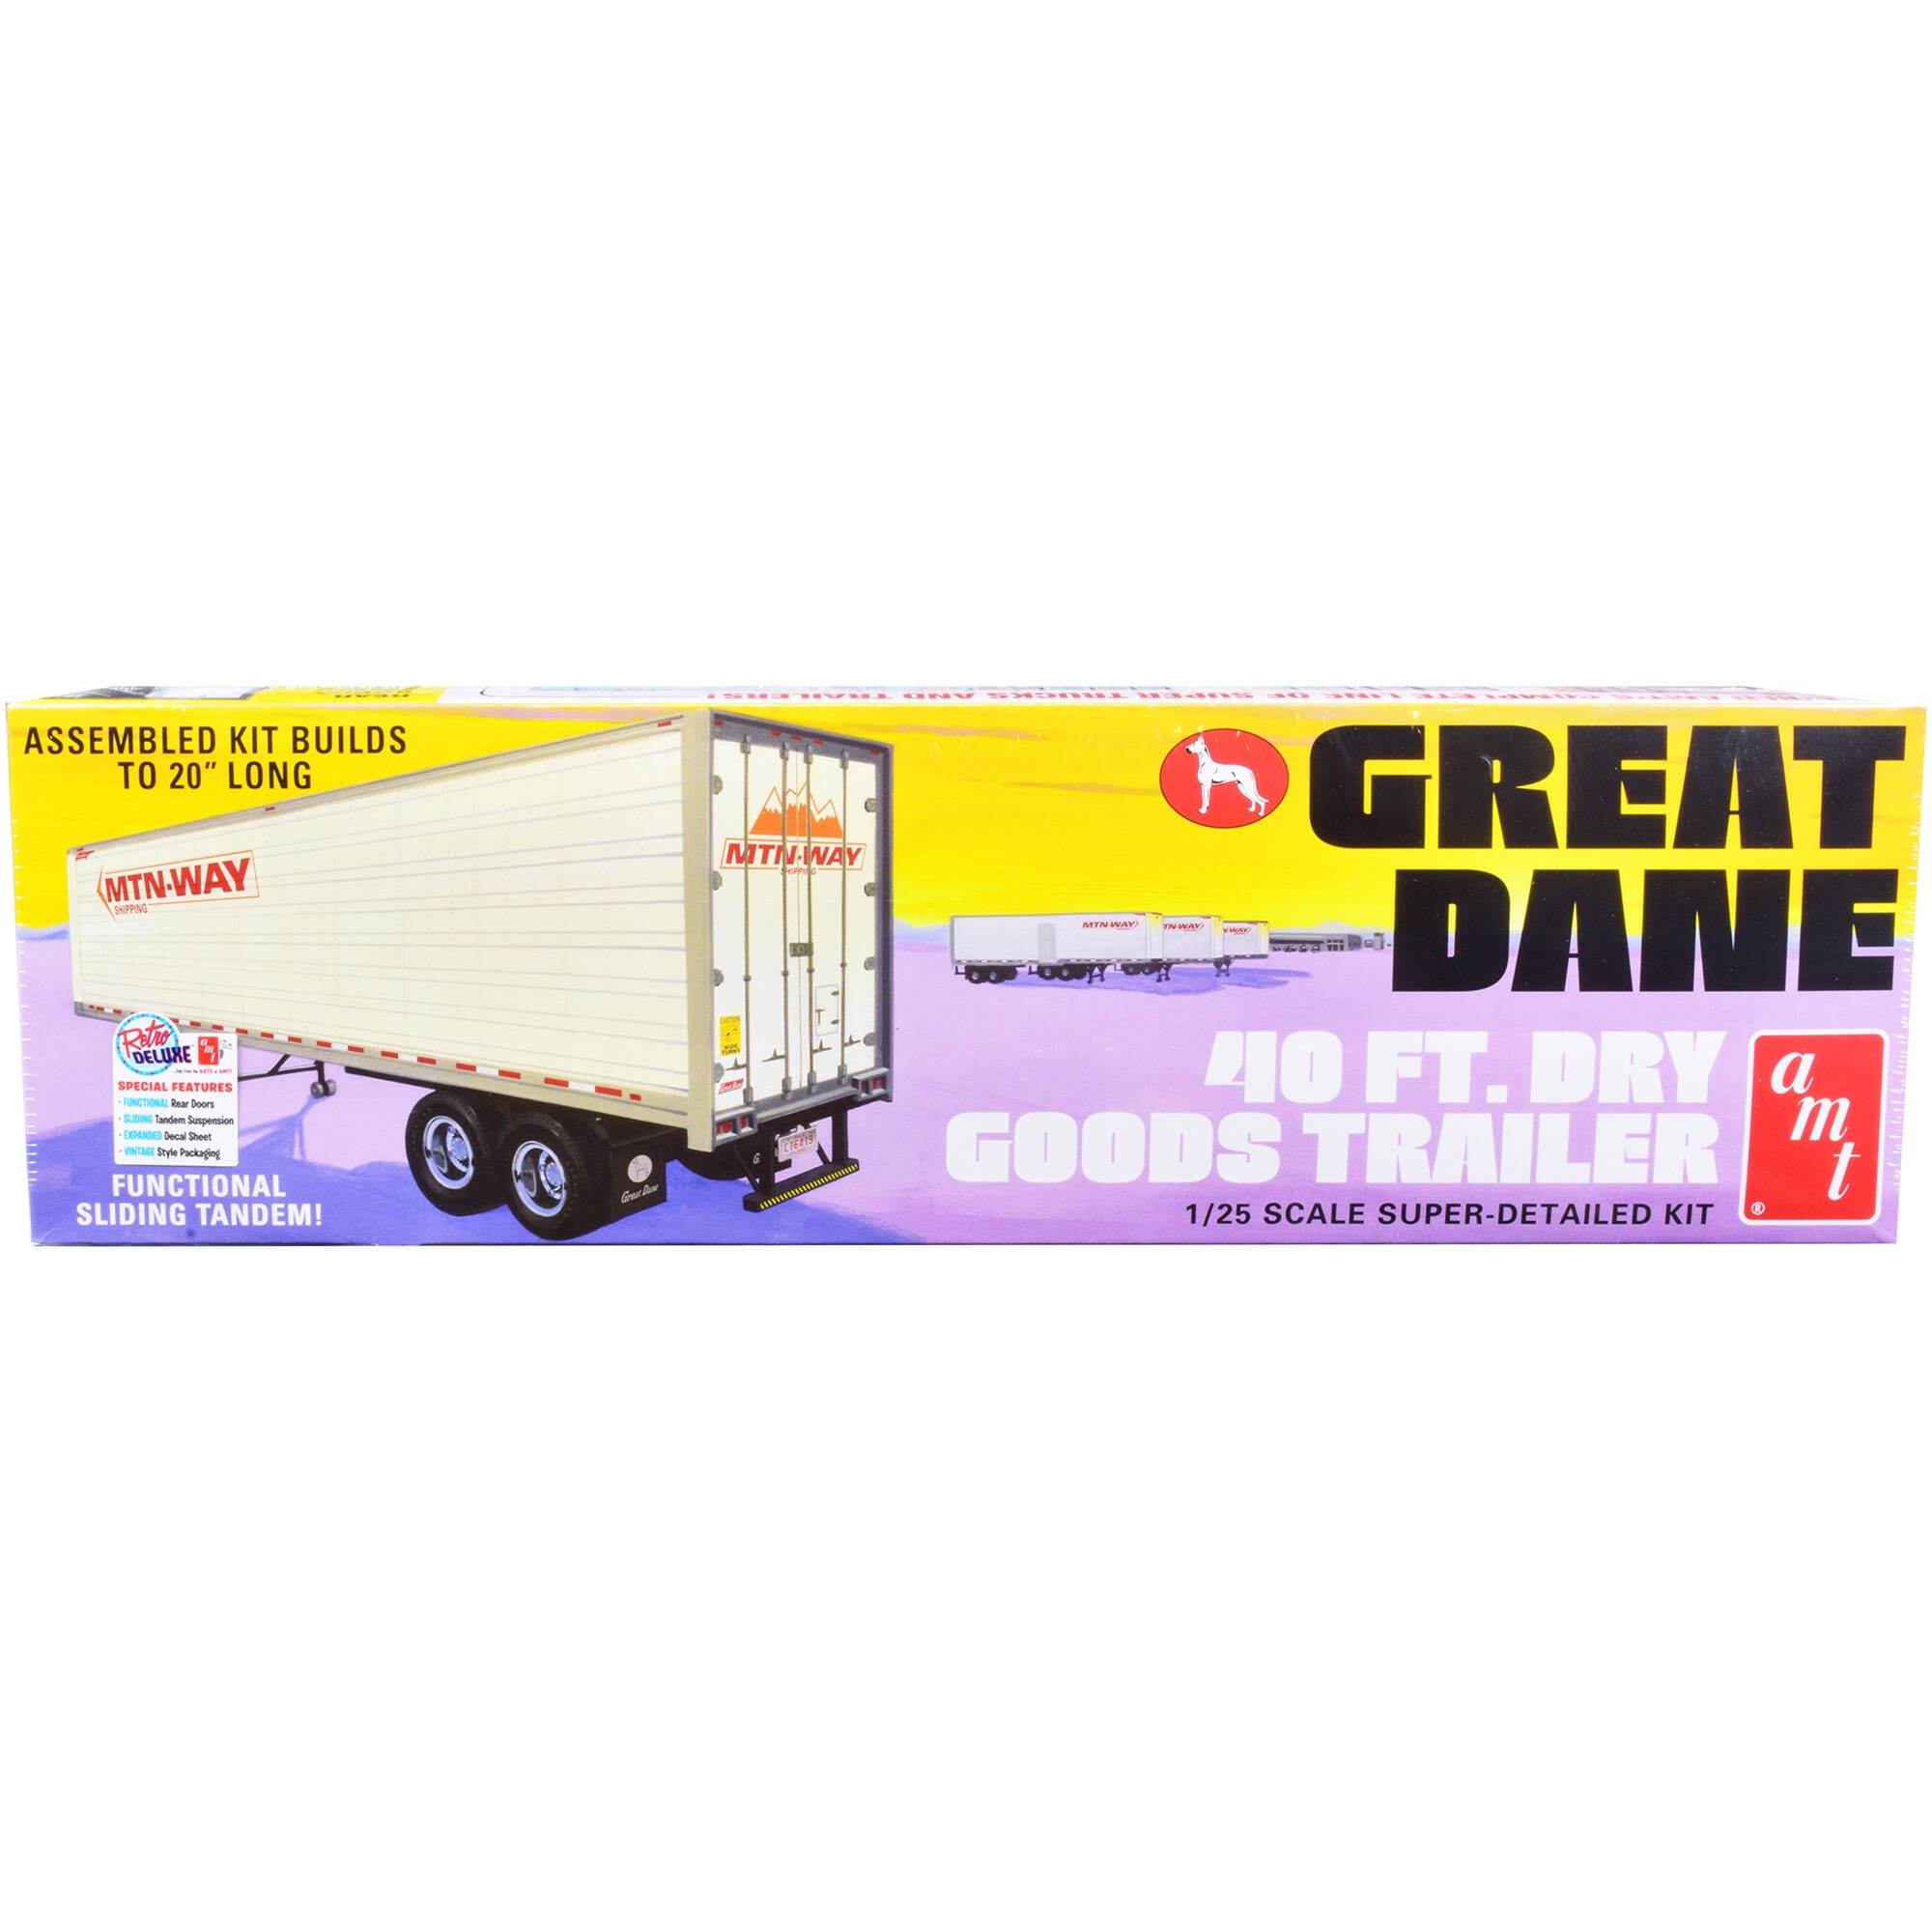 Great Dane 40ft Dry Goods Trailer